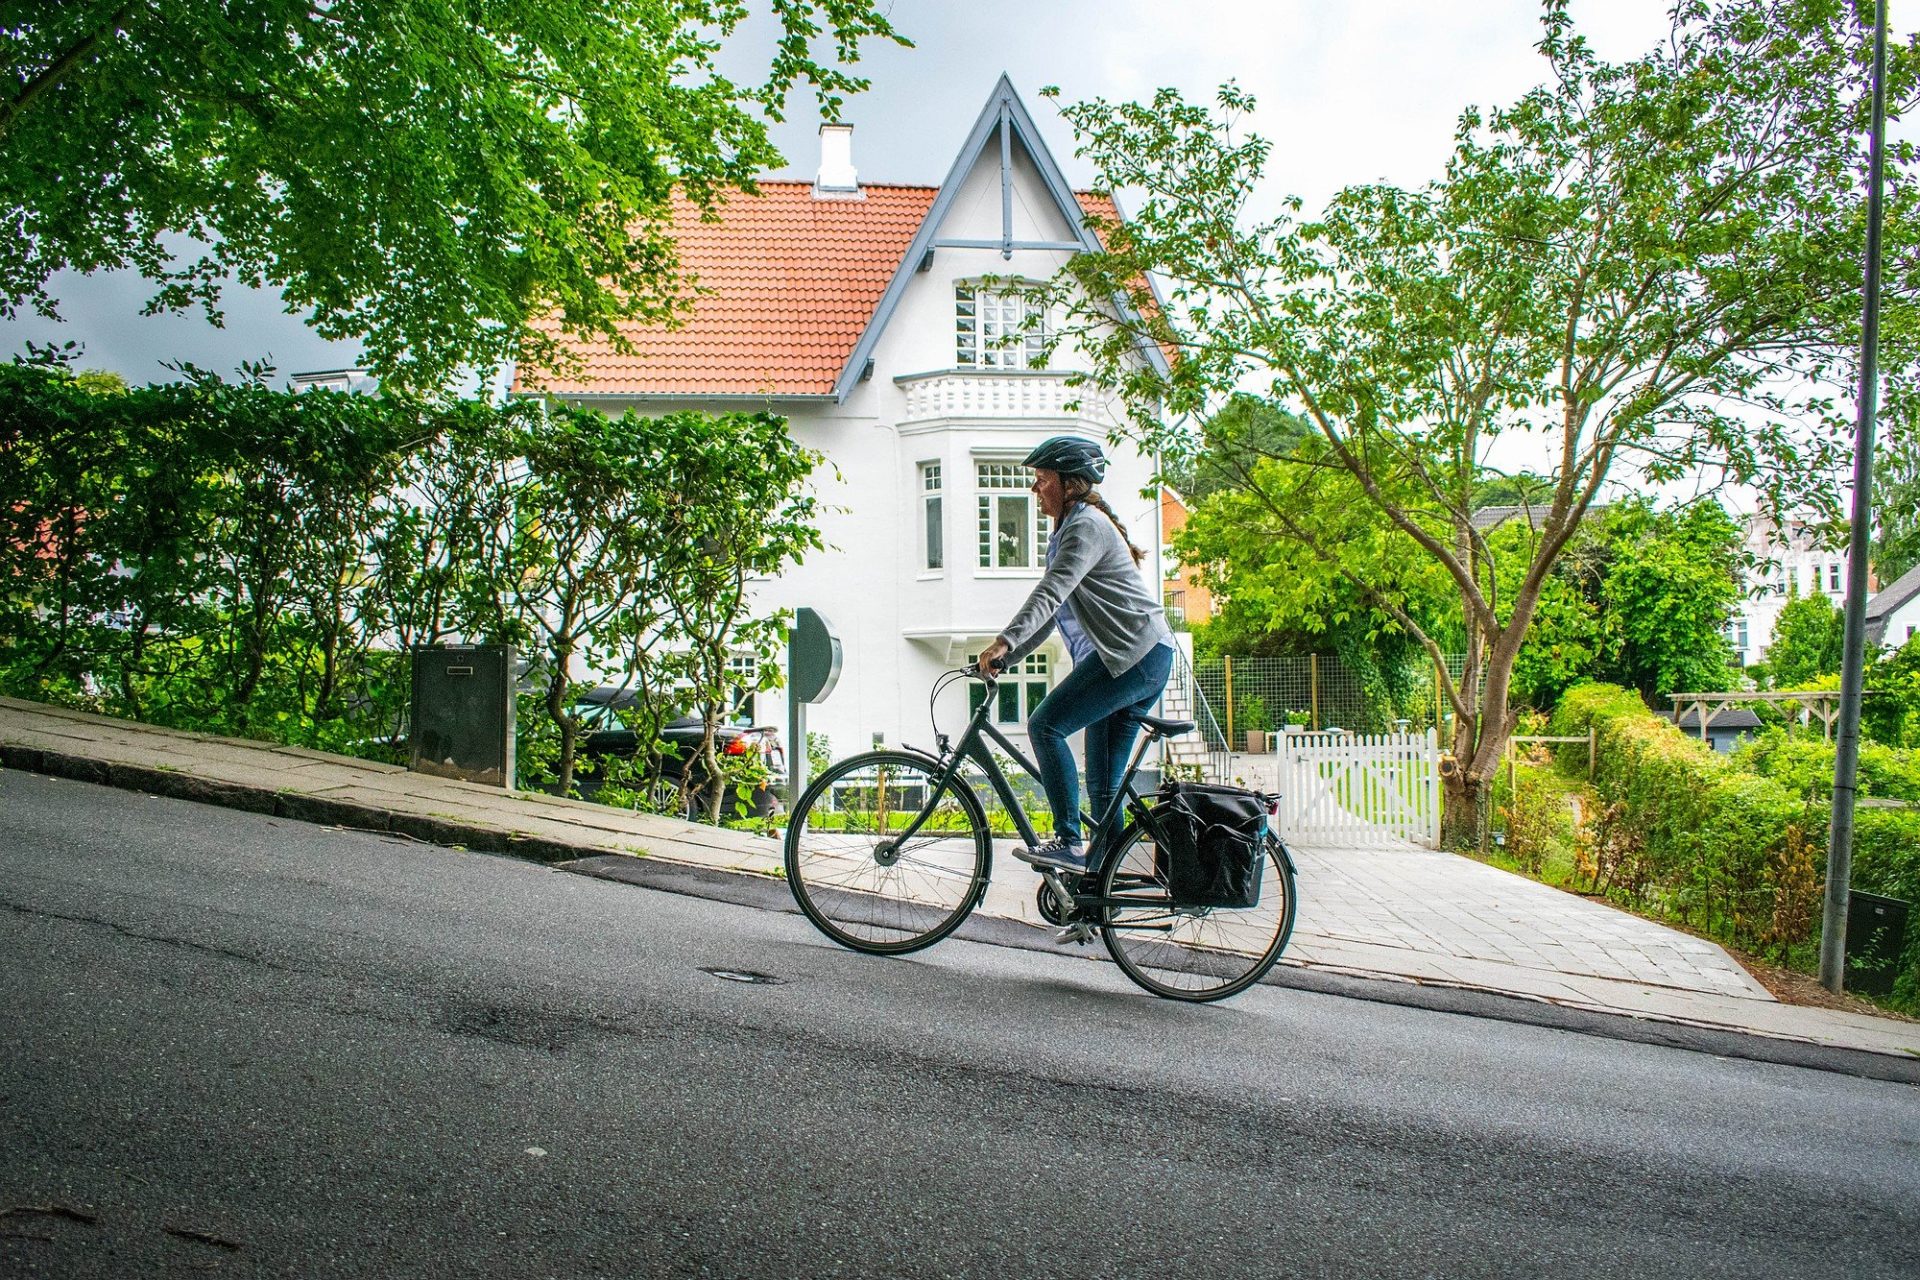 Radfahren auf einem steilen Hügel in Vejle, Hærvejen, Dänemark